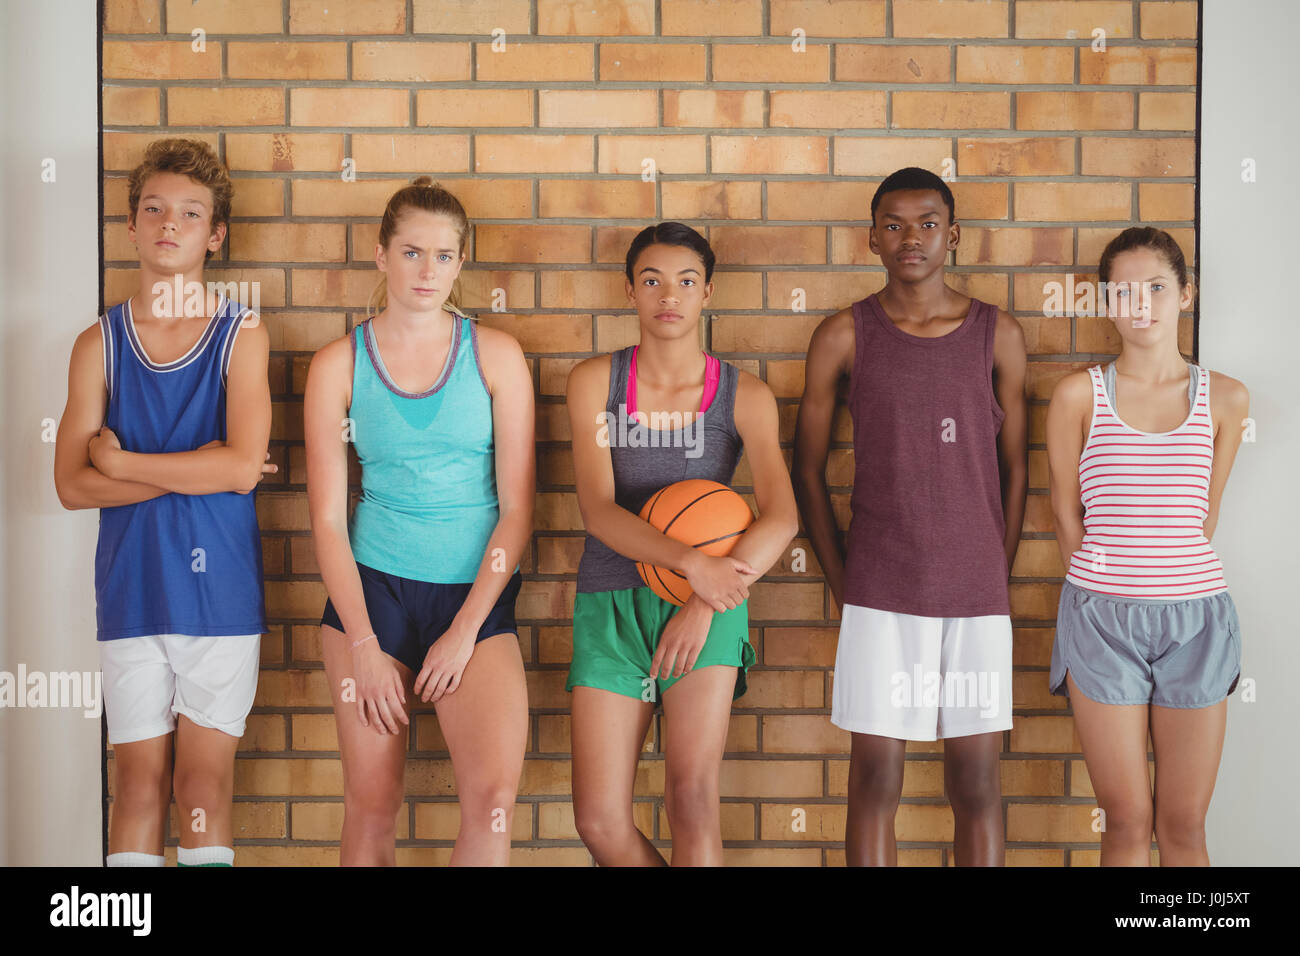 Porträt von High-School-Kids in Basketballplatz an die Wand gelehnt Stockfoto